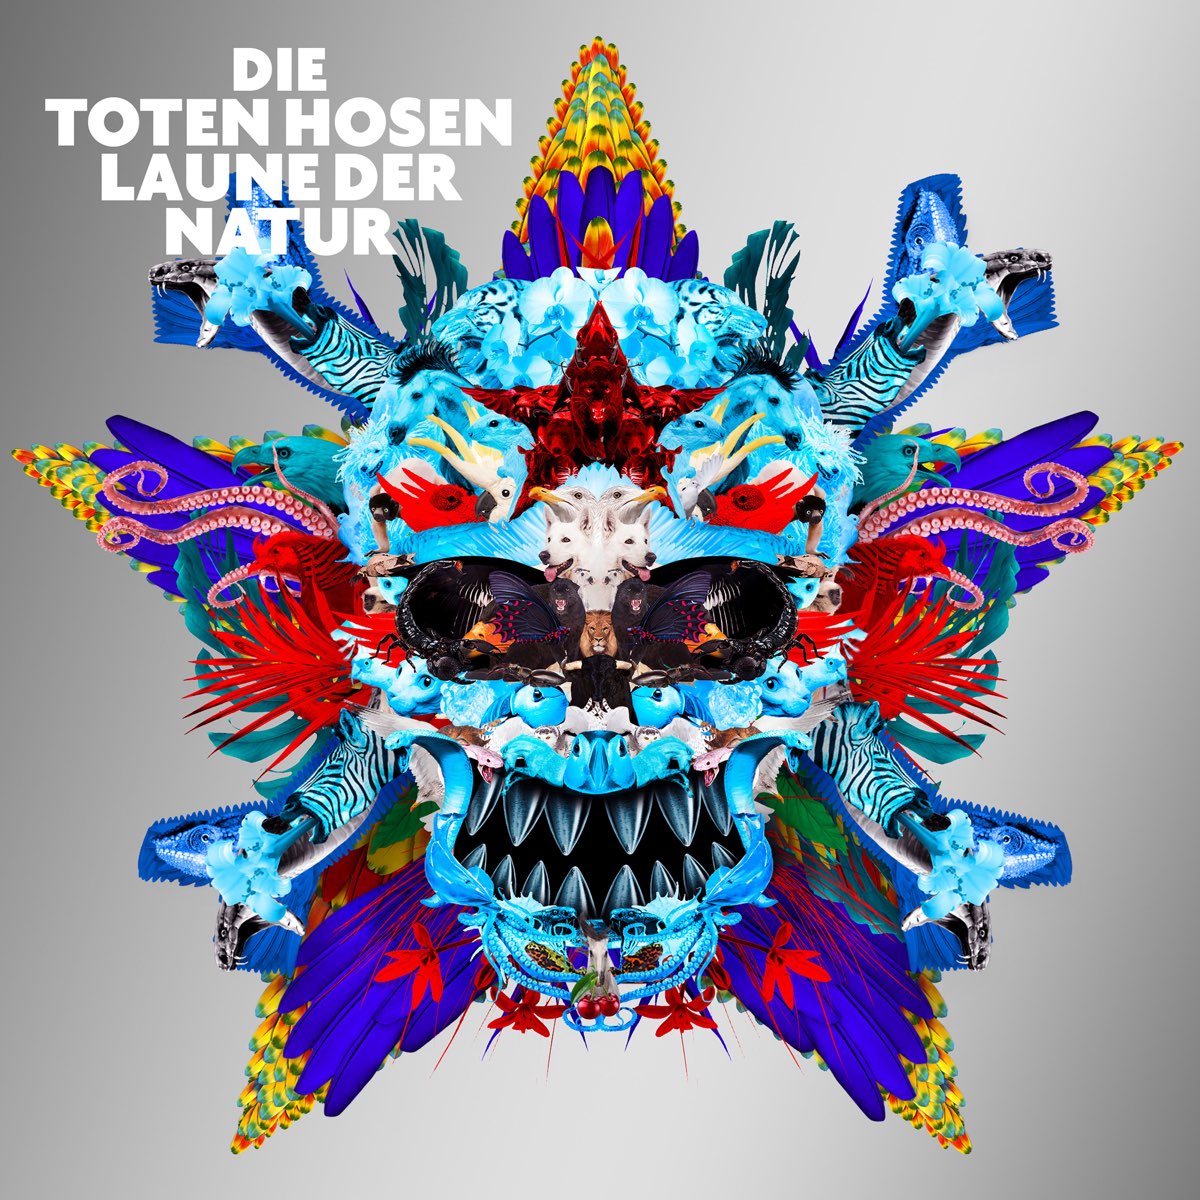 Laune der Natur (Bonustracks) de Die Toten Hosen en Apple Music